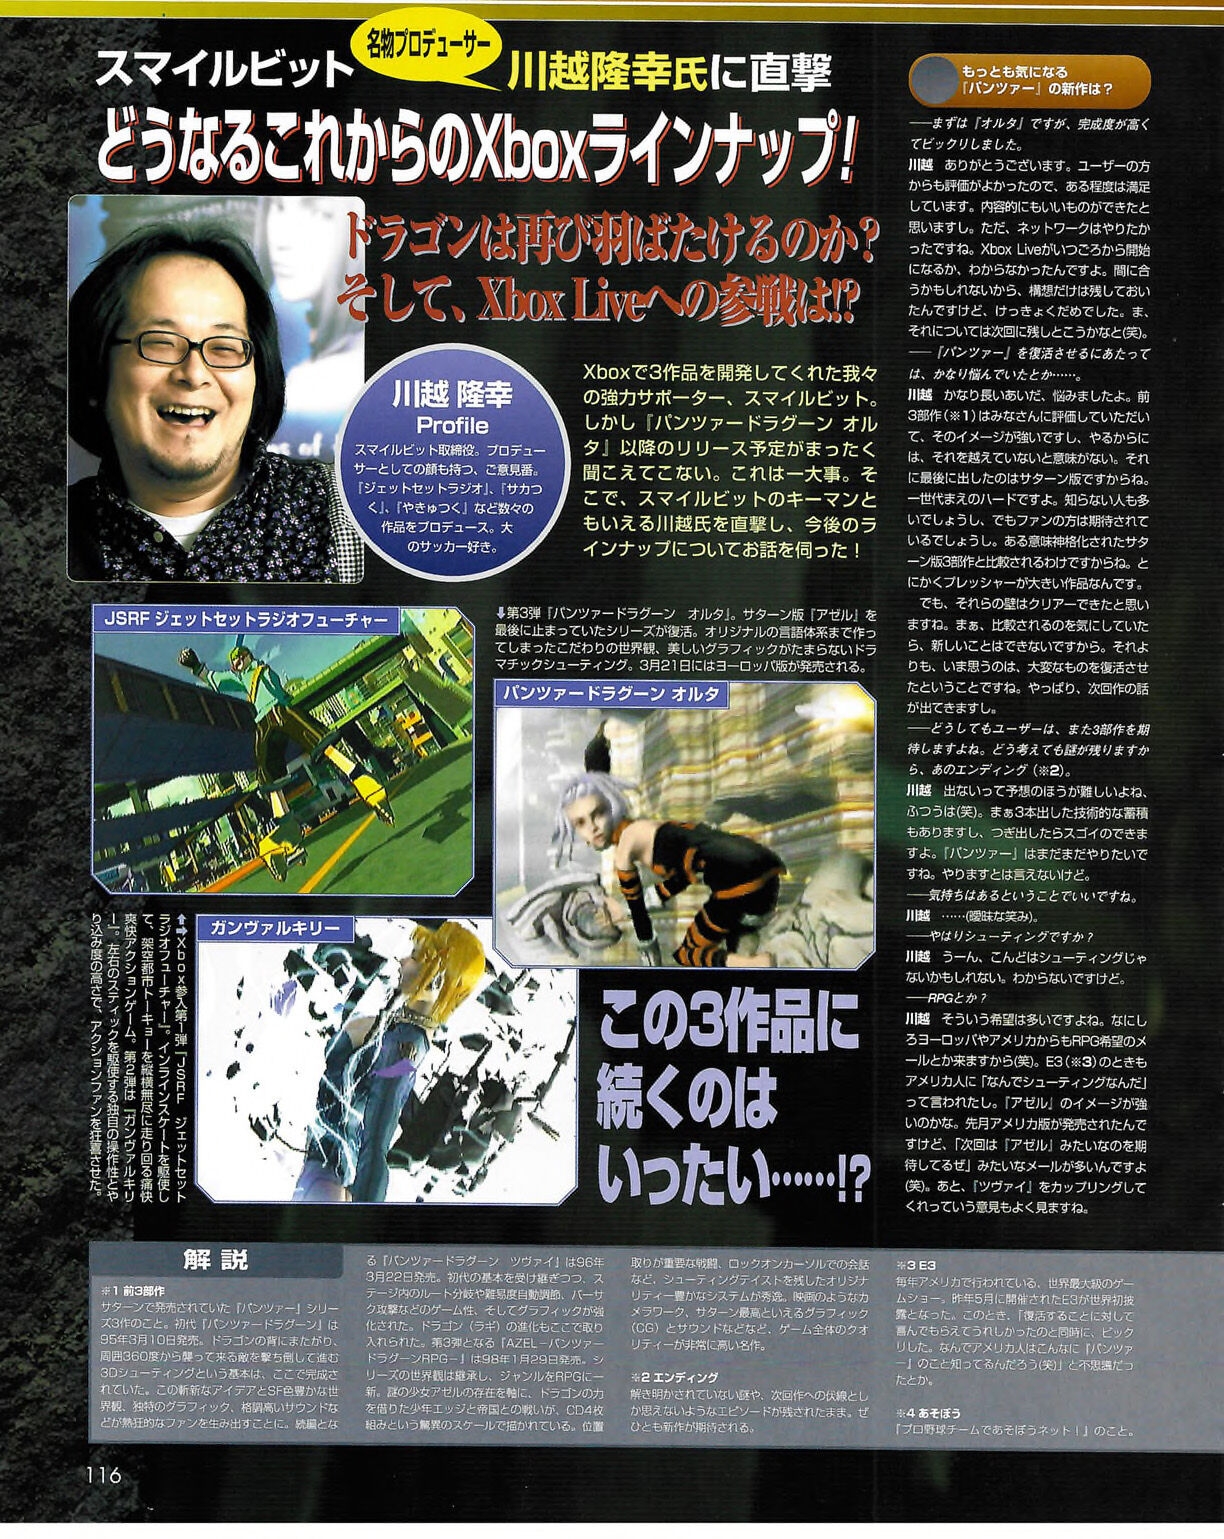 Famitsu_Xbox_2003-04_jp2 115